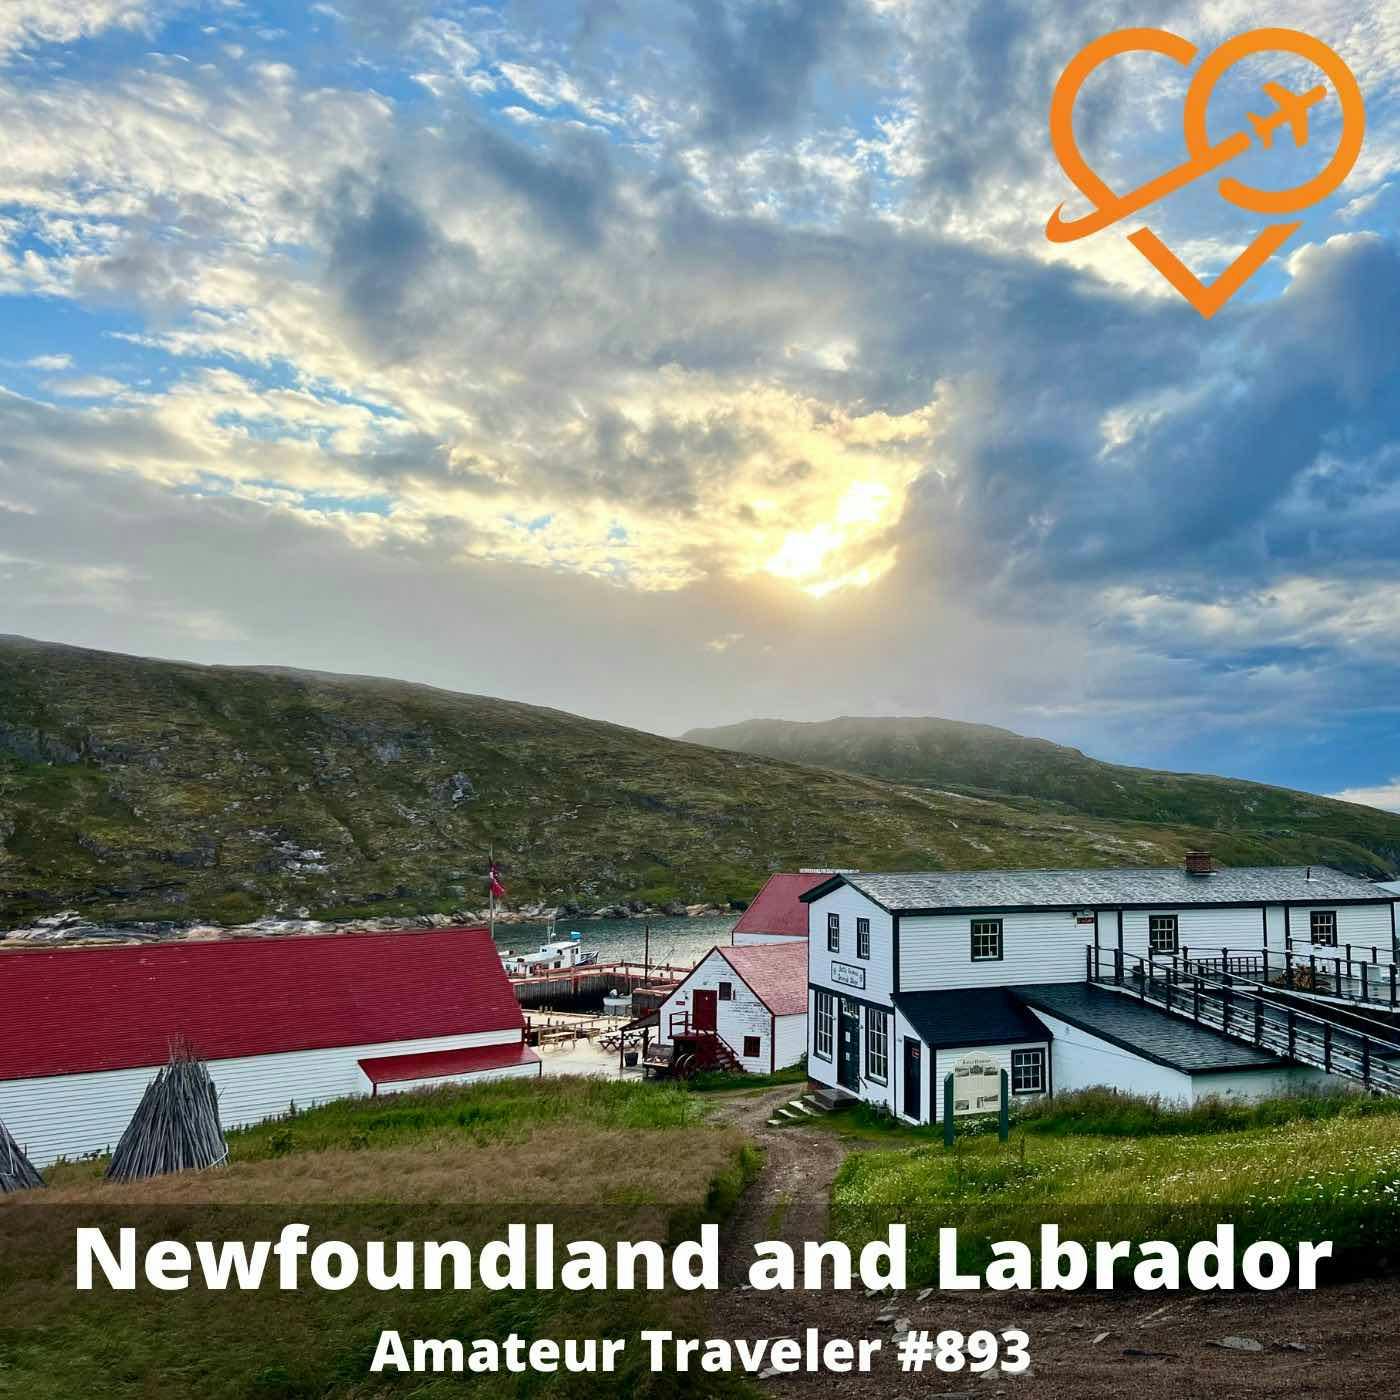 AT#893 - Travel to Newfoundland and Labrador